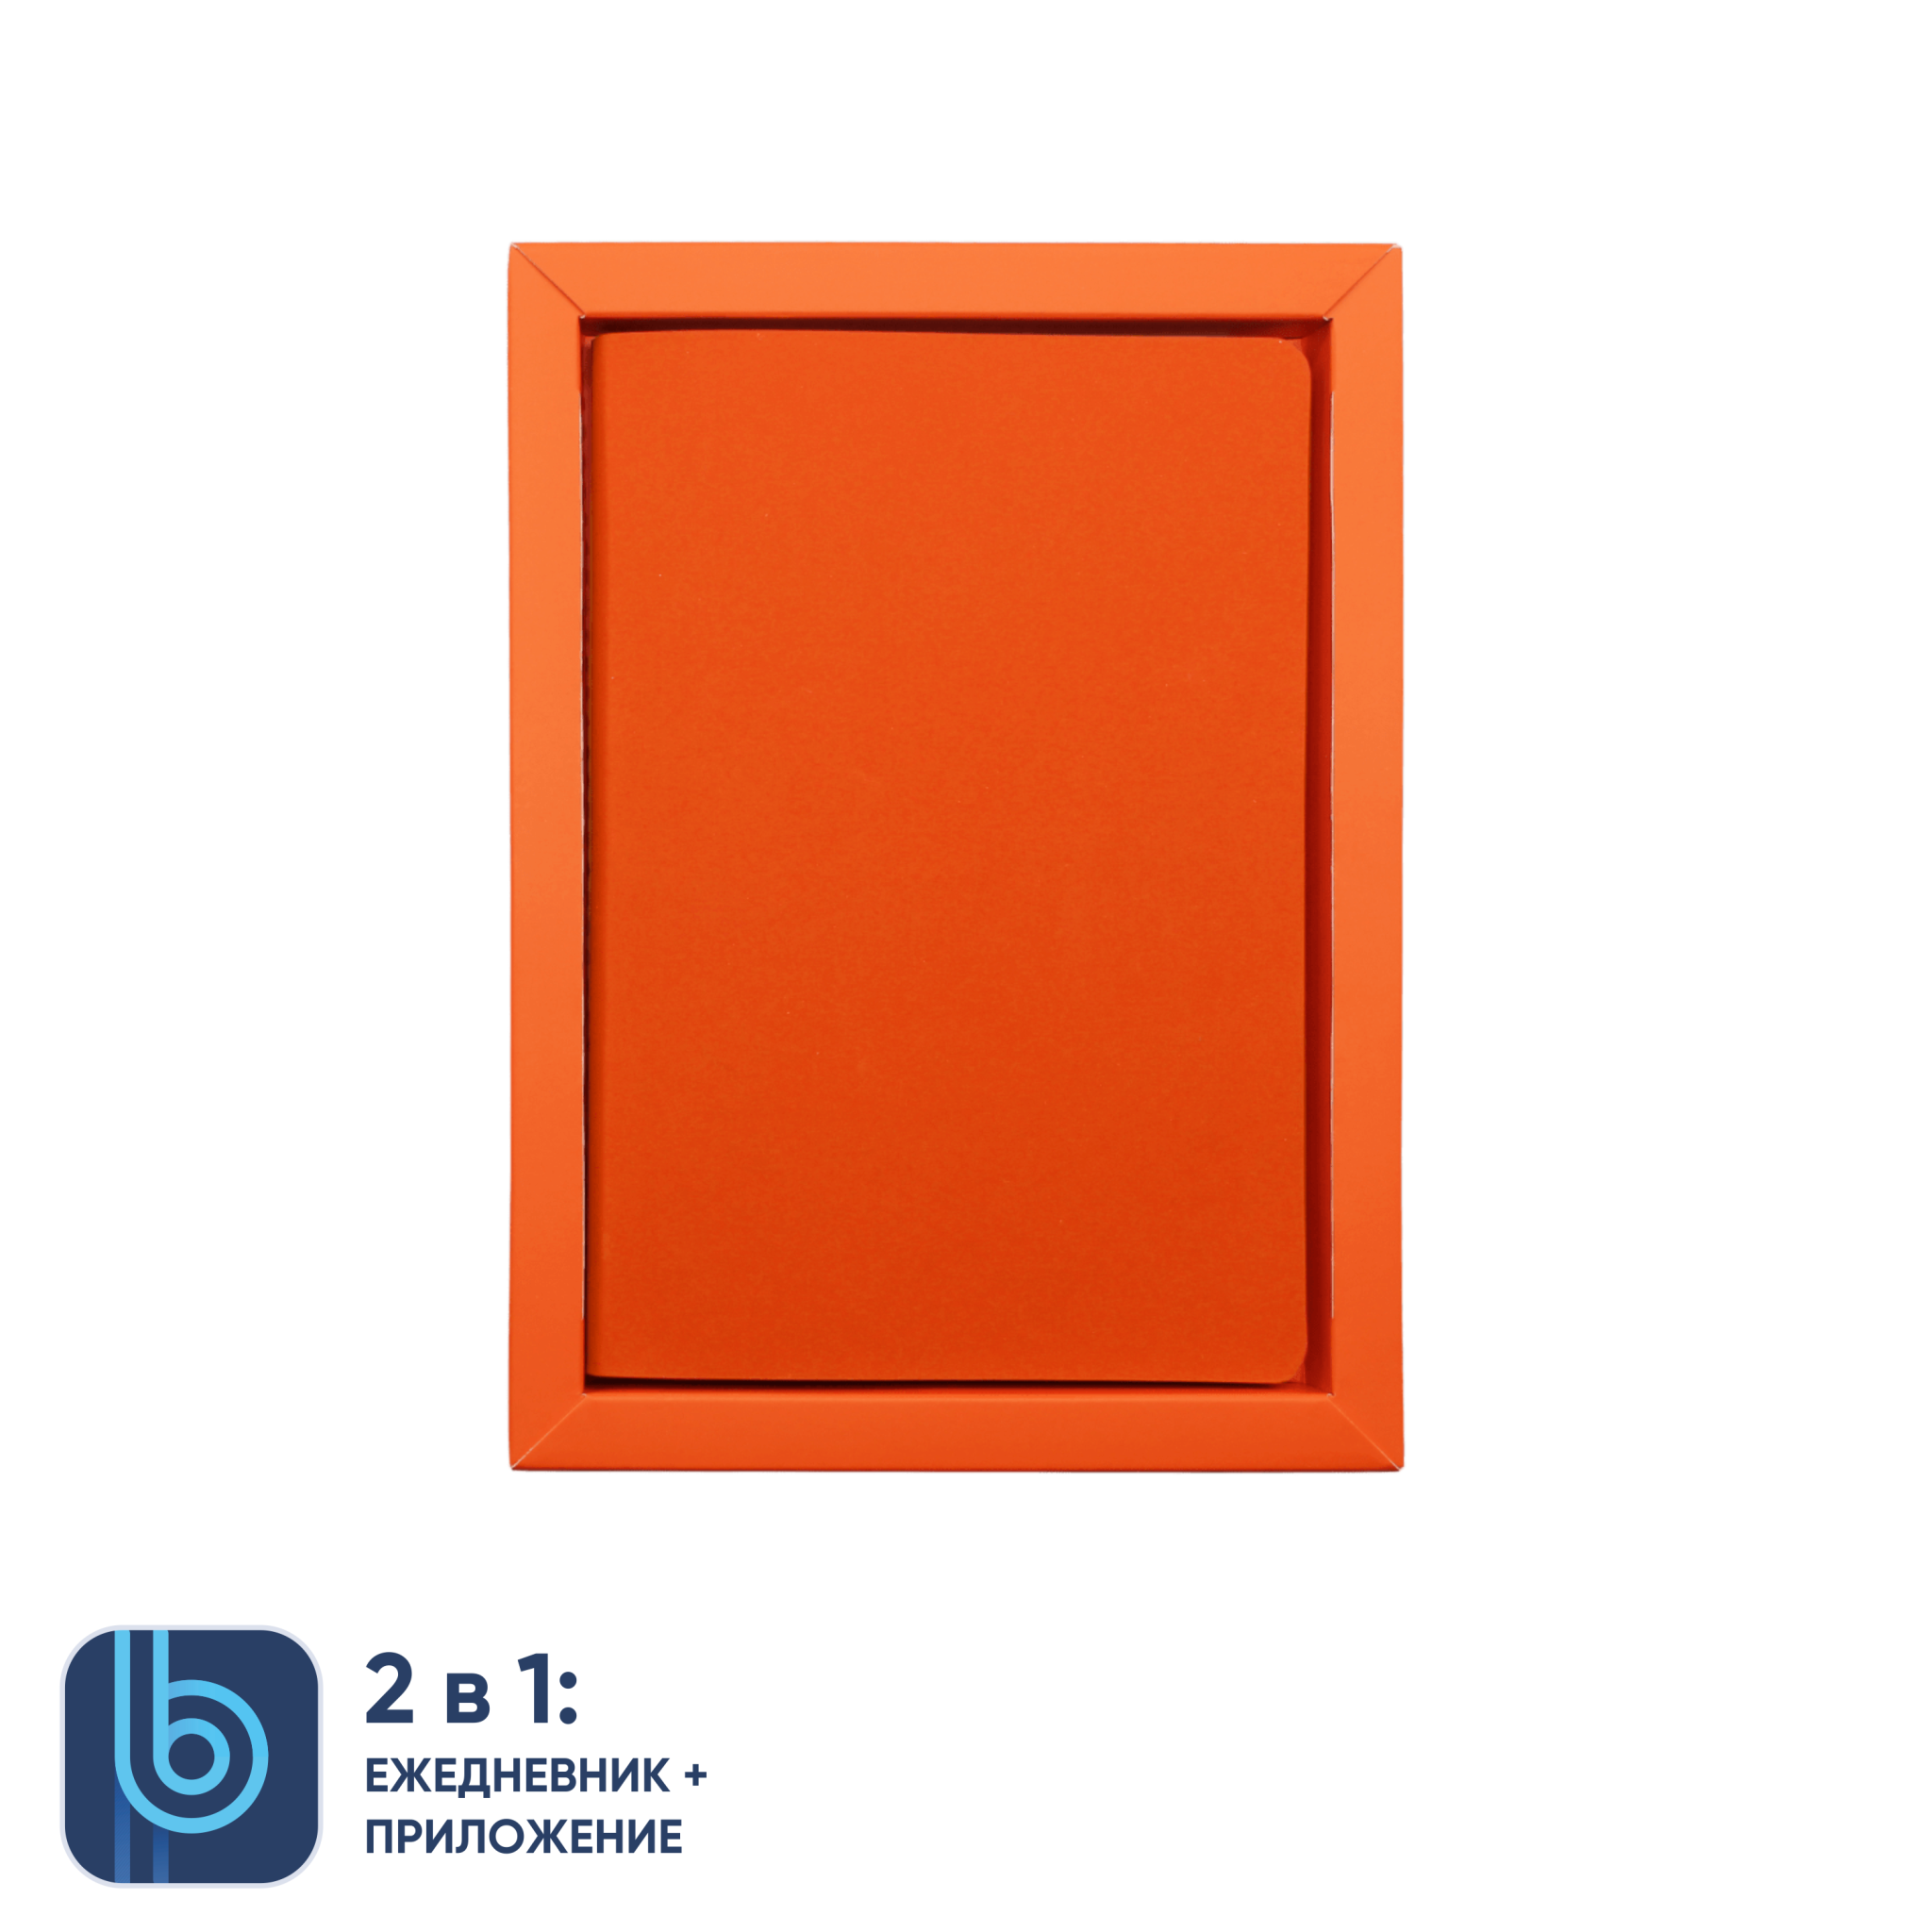 Ежедневник Bplanner.01 в подарочной коробке (оранжевый), оранжевый, картон